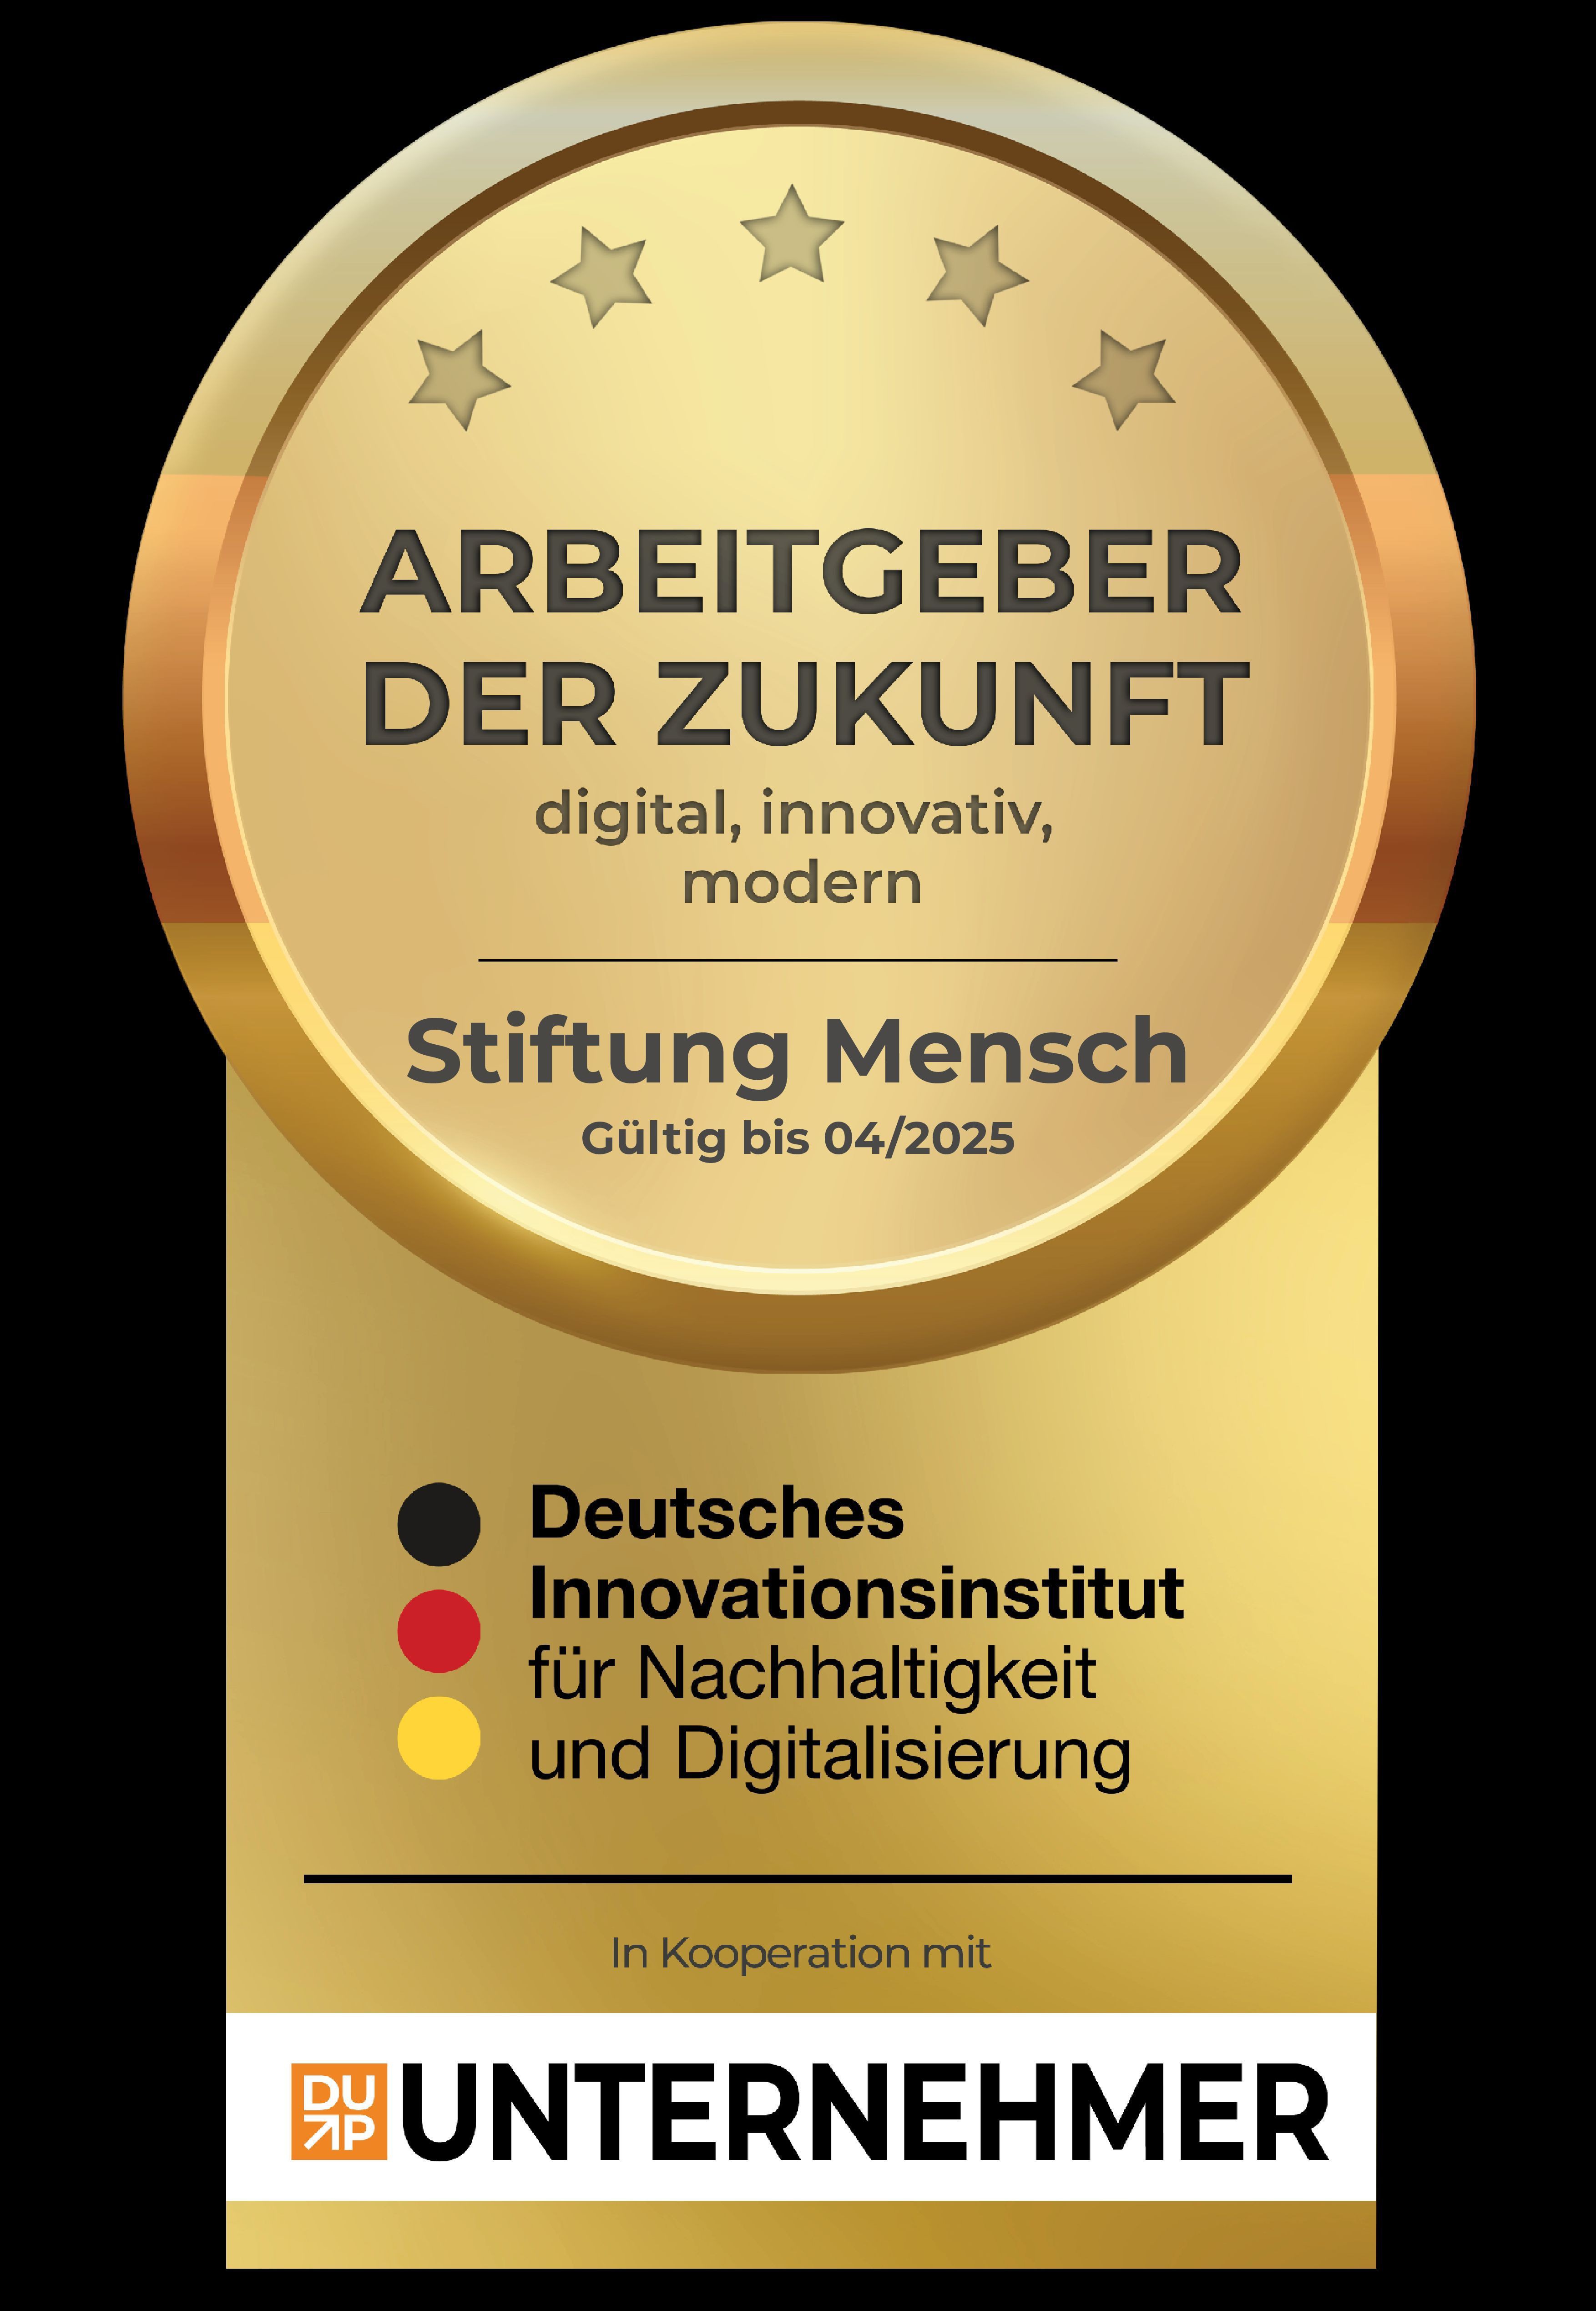 Award: Arbeitgeber der Zukunft